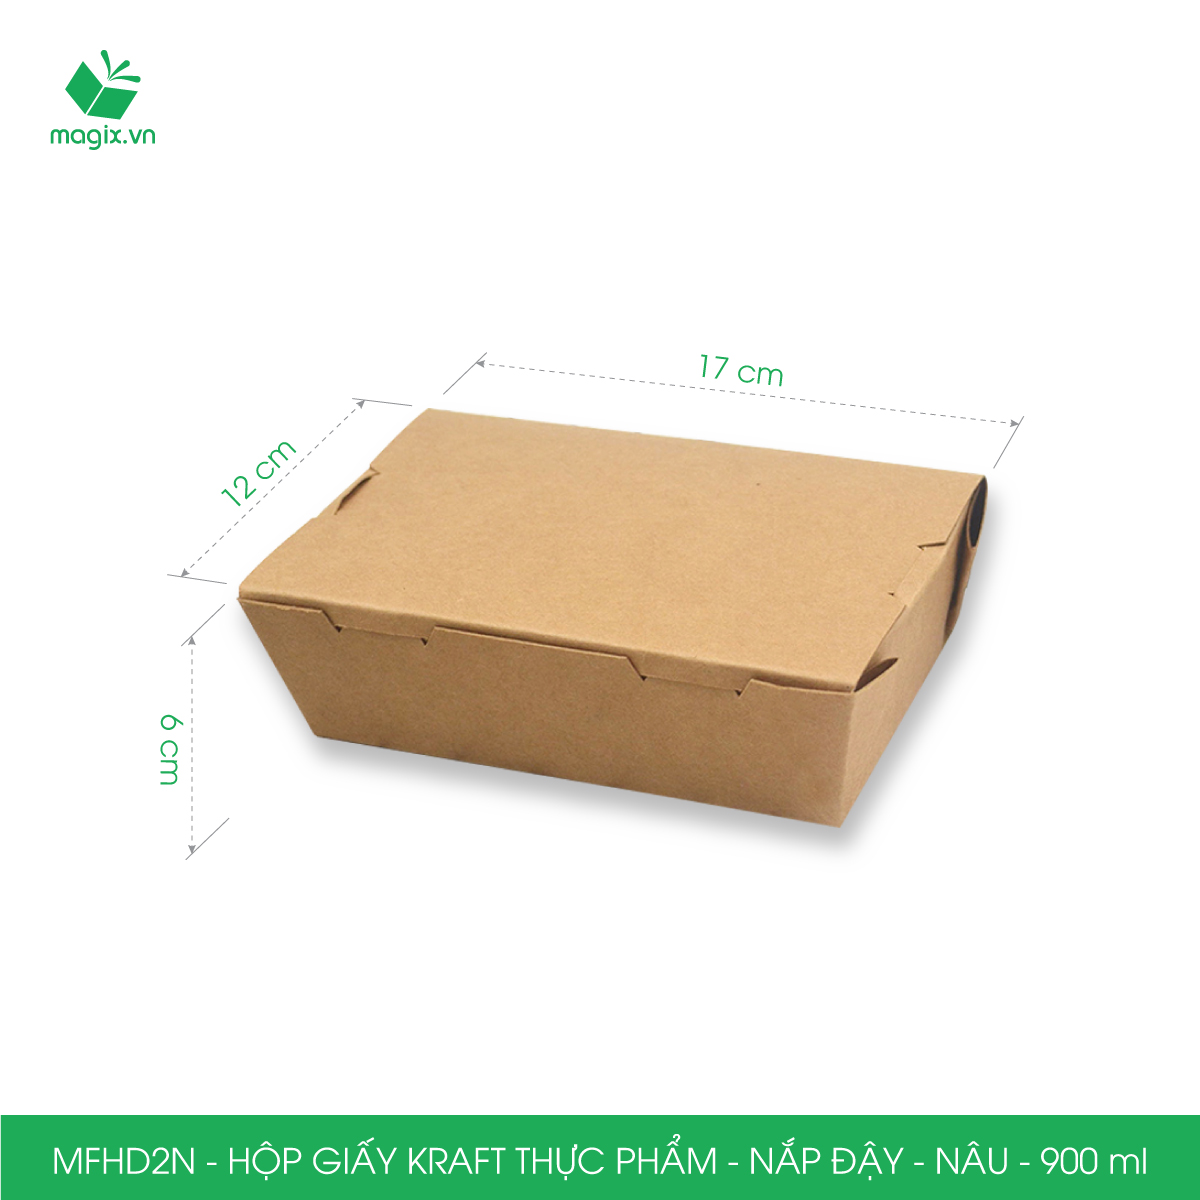 MFHD2N - Combo 25 hộp giấy kraft thực phẩm 900ml, hộp đựng thức ăn nắp đậy màu nâu, hộp gói đồ ăn mang đi